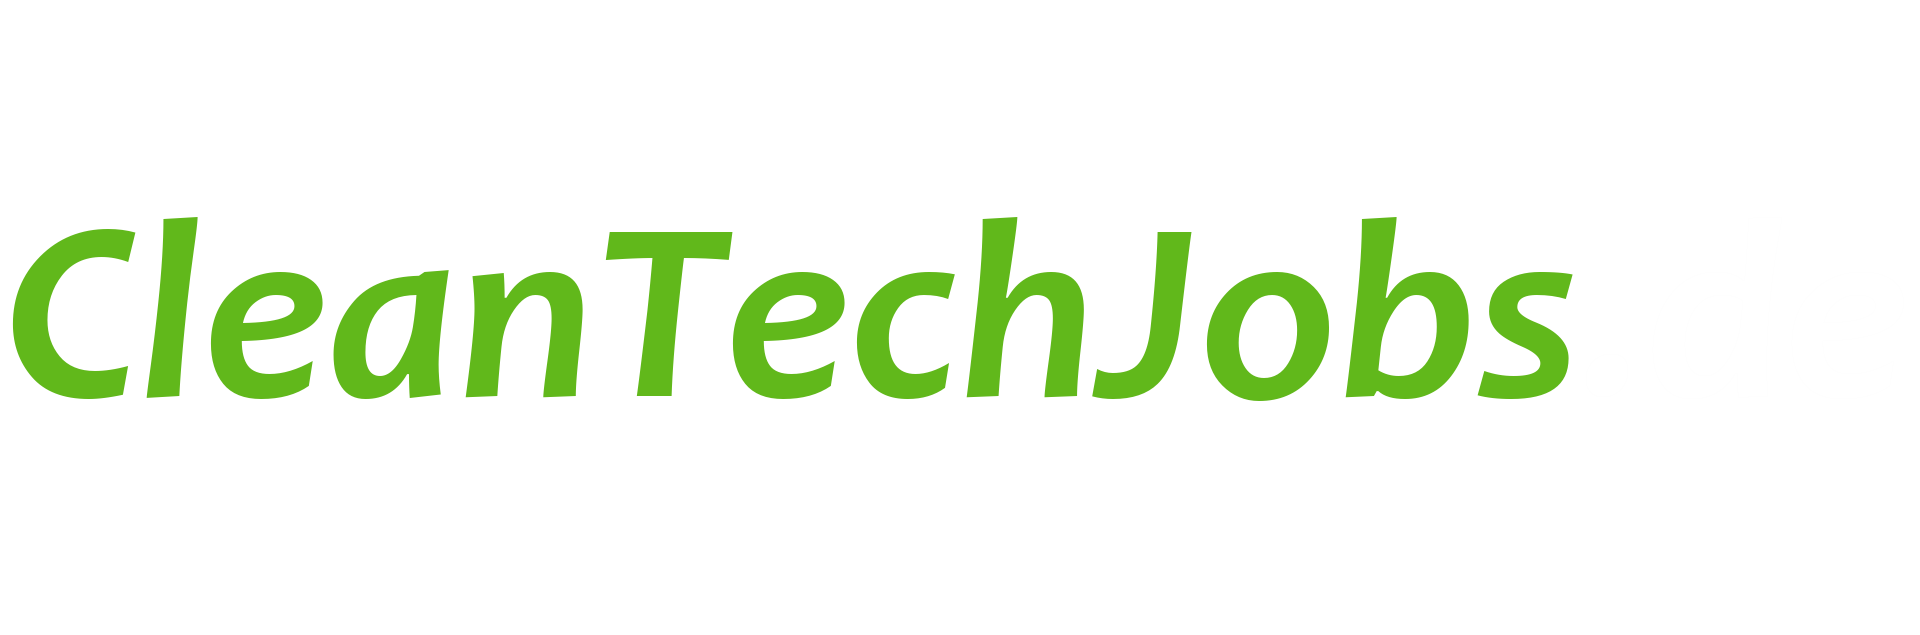 Cleantechjobs.de: Cleantech, Umwelt & erneuerbare Energien